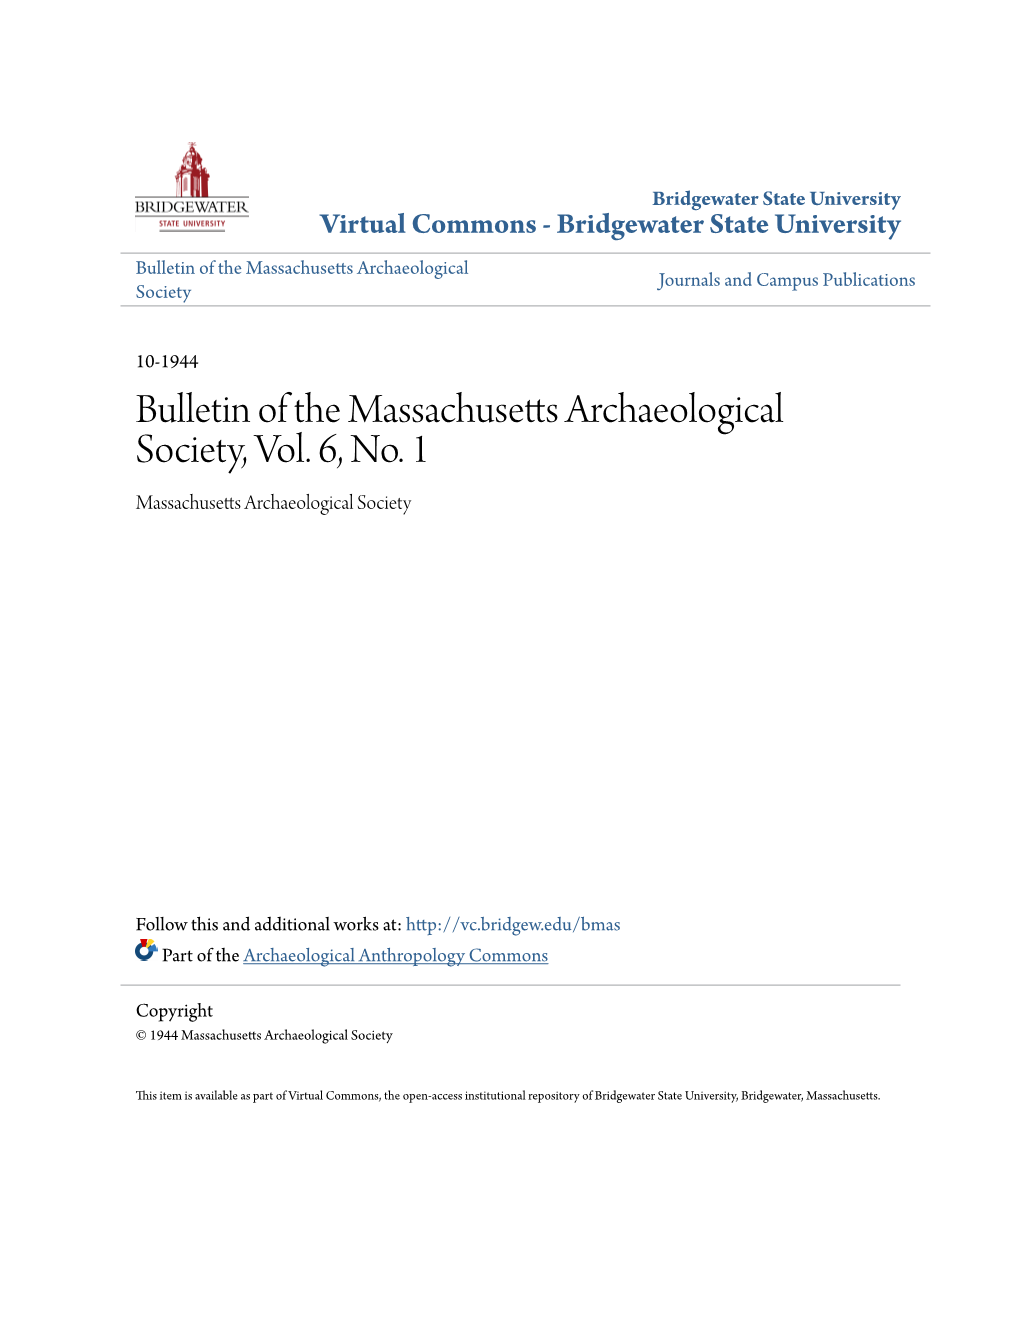 Bulletin of the Massachusetts Archaeological Society, Vol. 6, No. 1 Massachusetts Archaeological Society